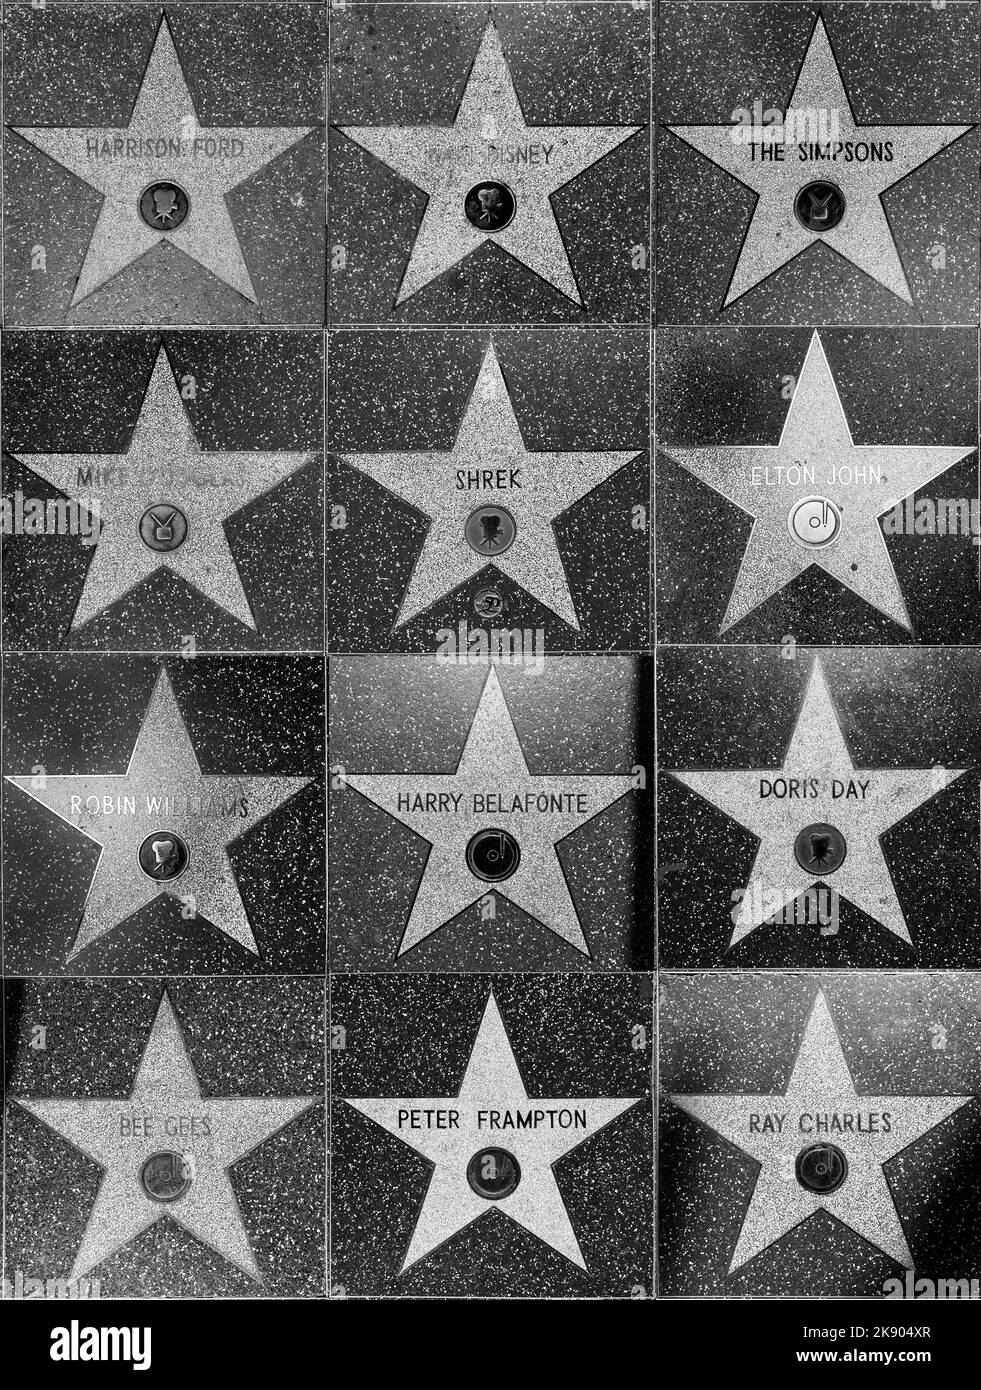 HOLLYWOOD - 24. JUNI 2012: Collage von Stars auf dem Hollywood Walk of Fame in Hollywood, Kalifornien. Es gibt Sterne auf Hollywood Blvd. Und sind pa Stockfoto